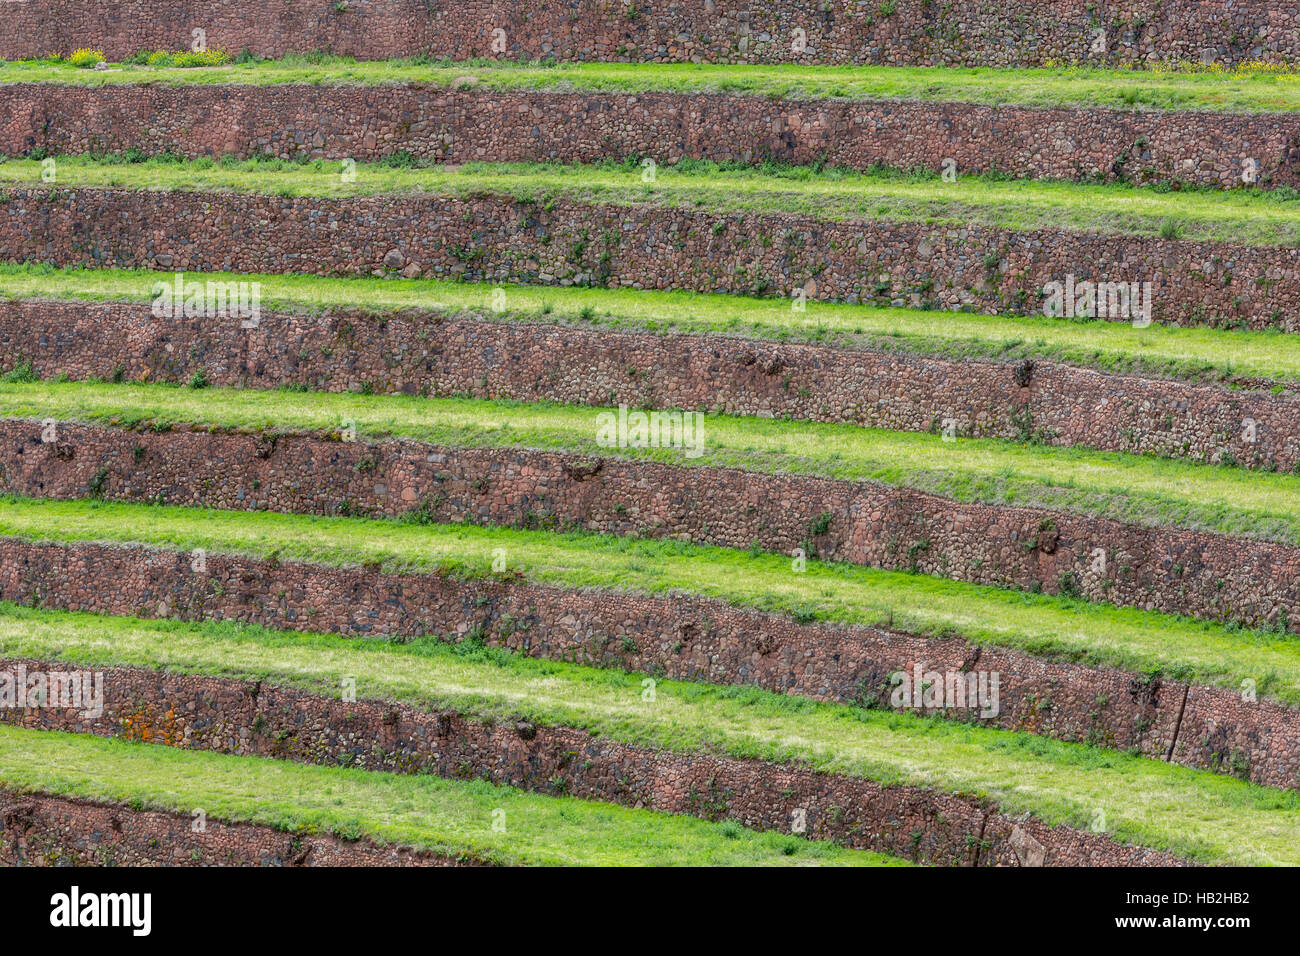 Tour de terrasses agricoles Incas dans la Vallée Sacrée, Pérou Banque D'Images